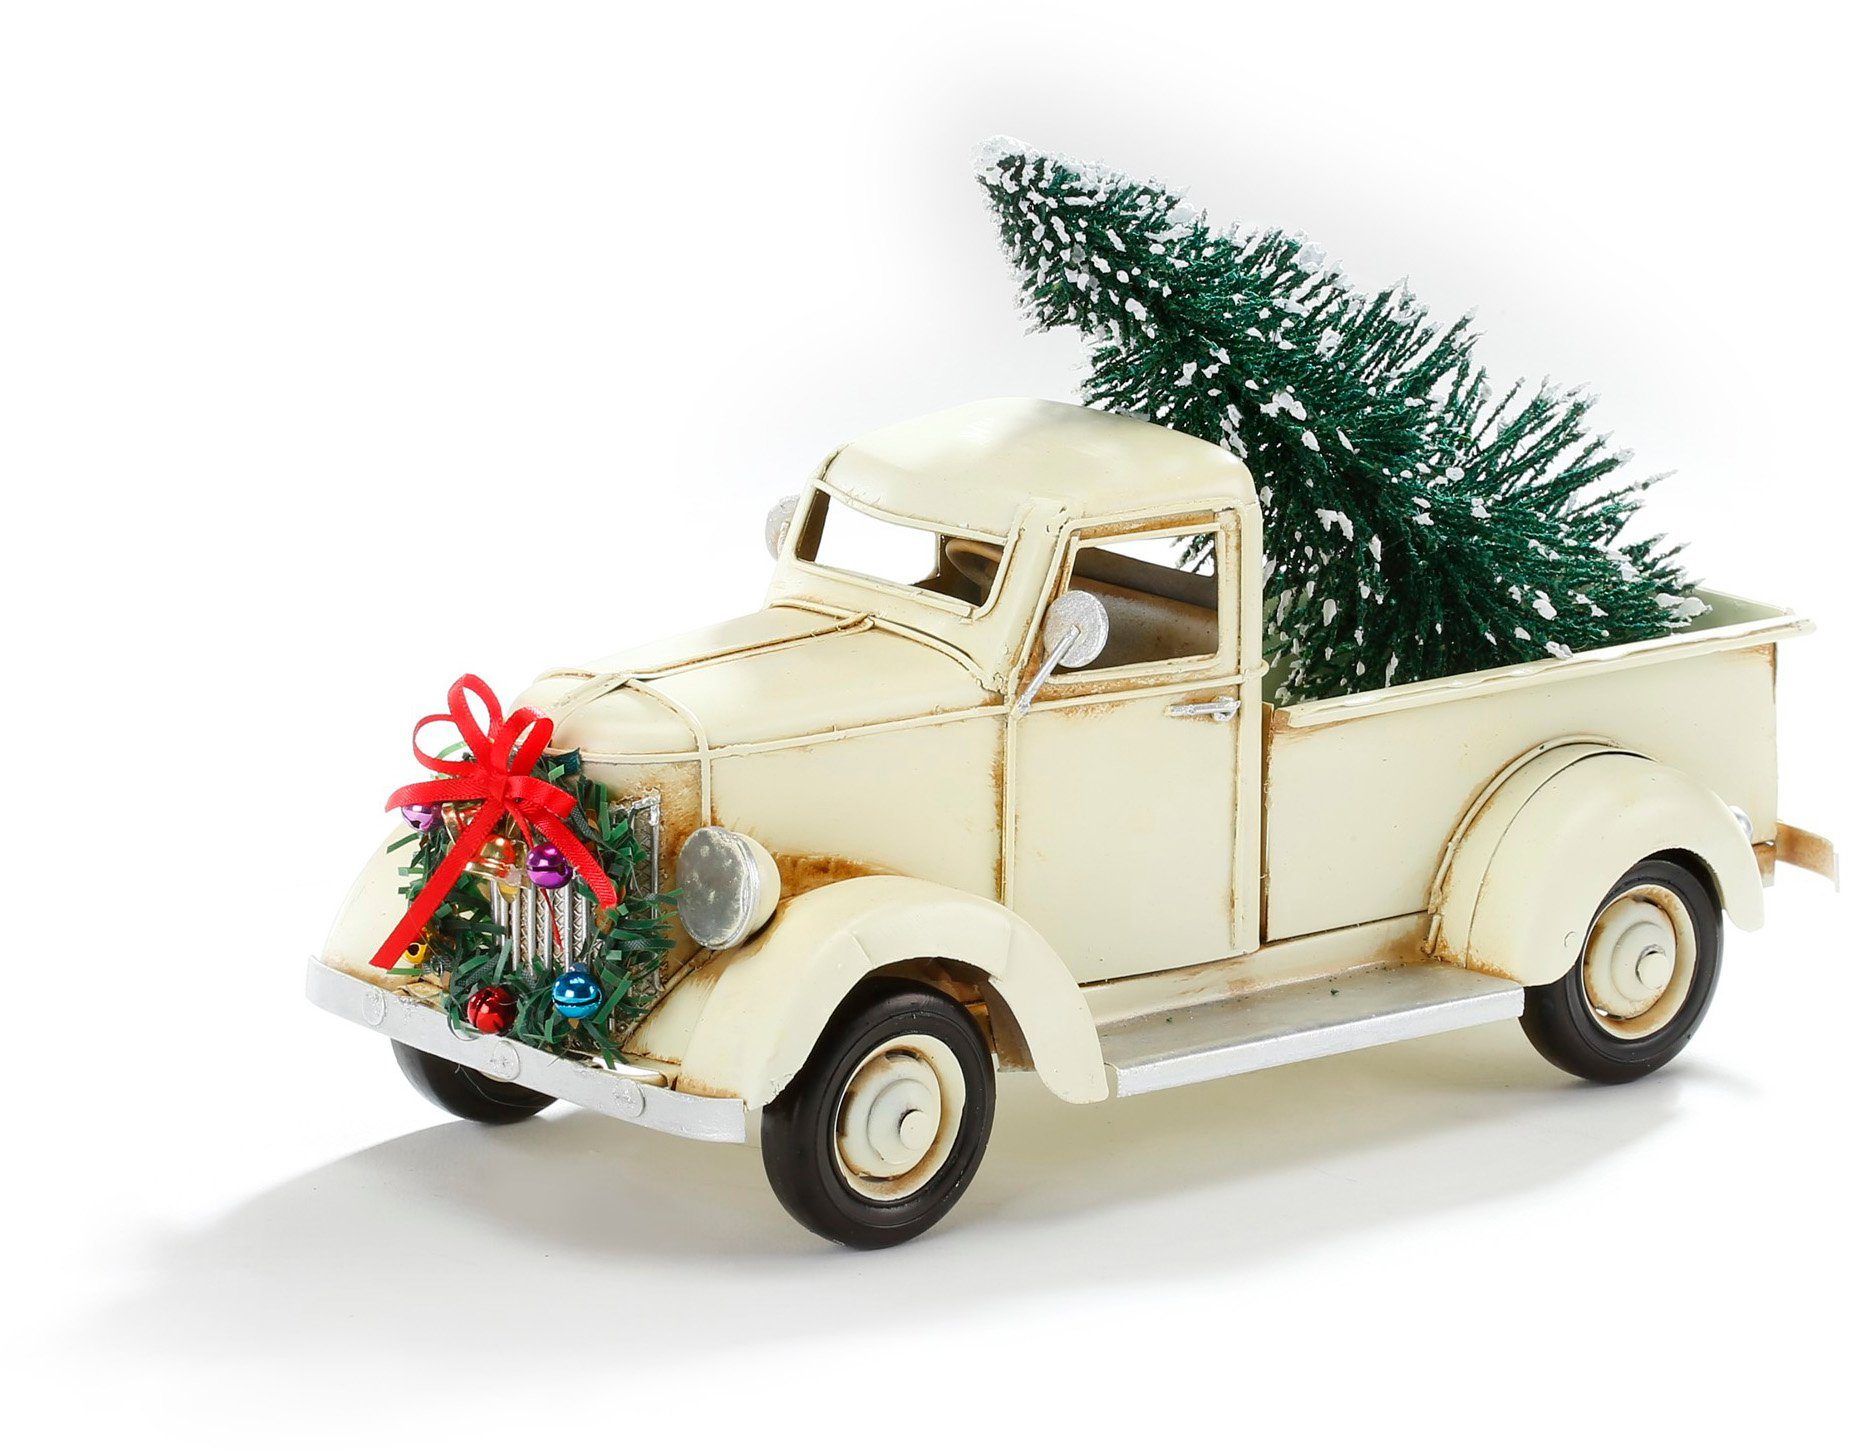 Weihnachtsdekoration . LKW Auto Dekorationen Für Weihnachtsbäume .  Weihnachtskugel Lizenzfreie Fotos, Bilder und Stock Fotografie. Image  88151285.